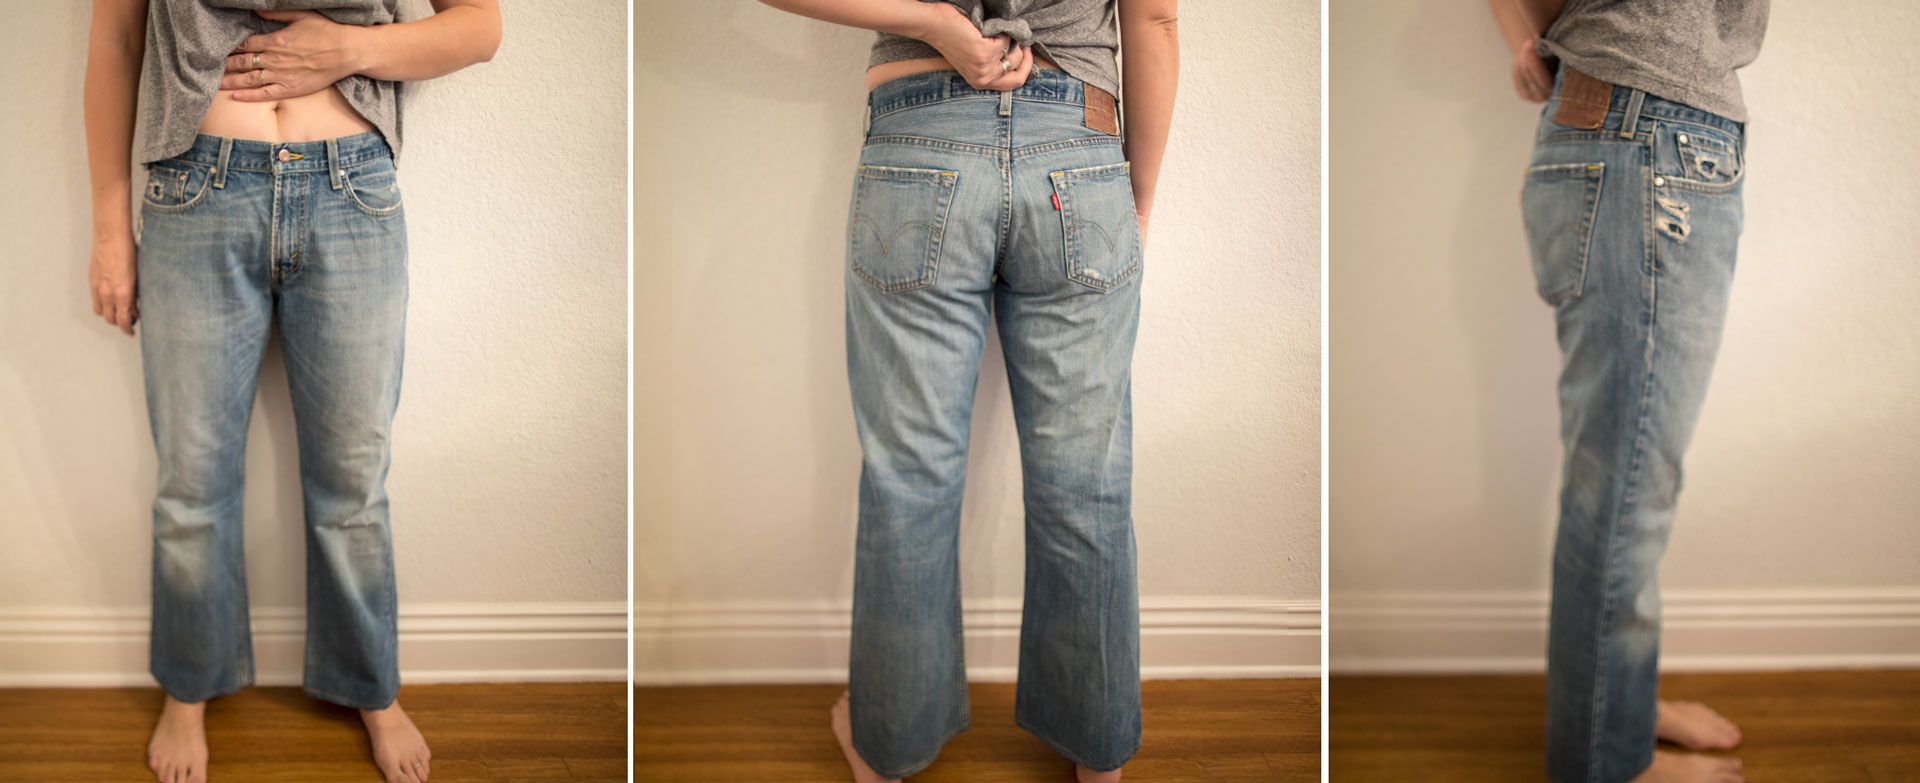 levis vintage jeans men